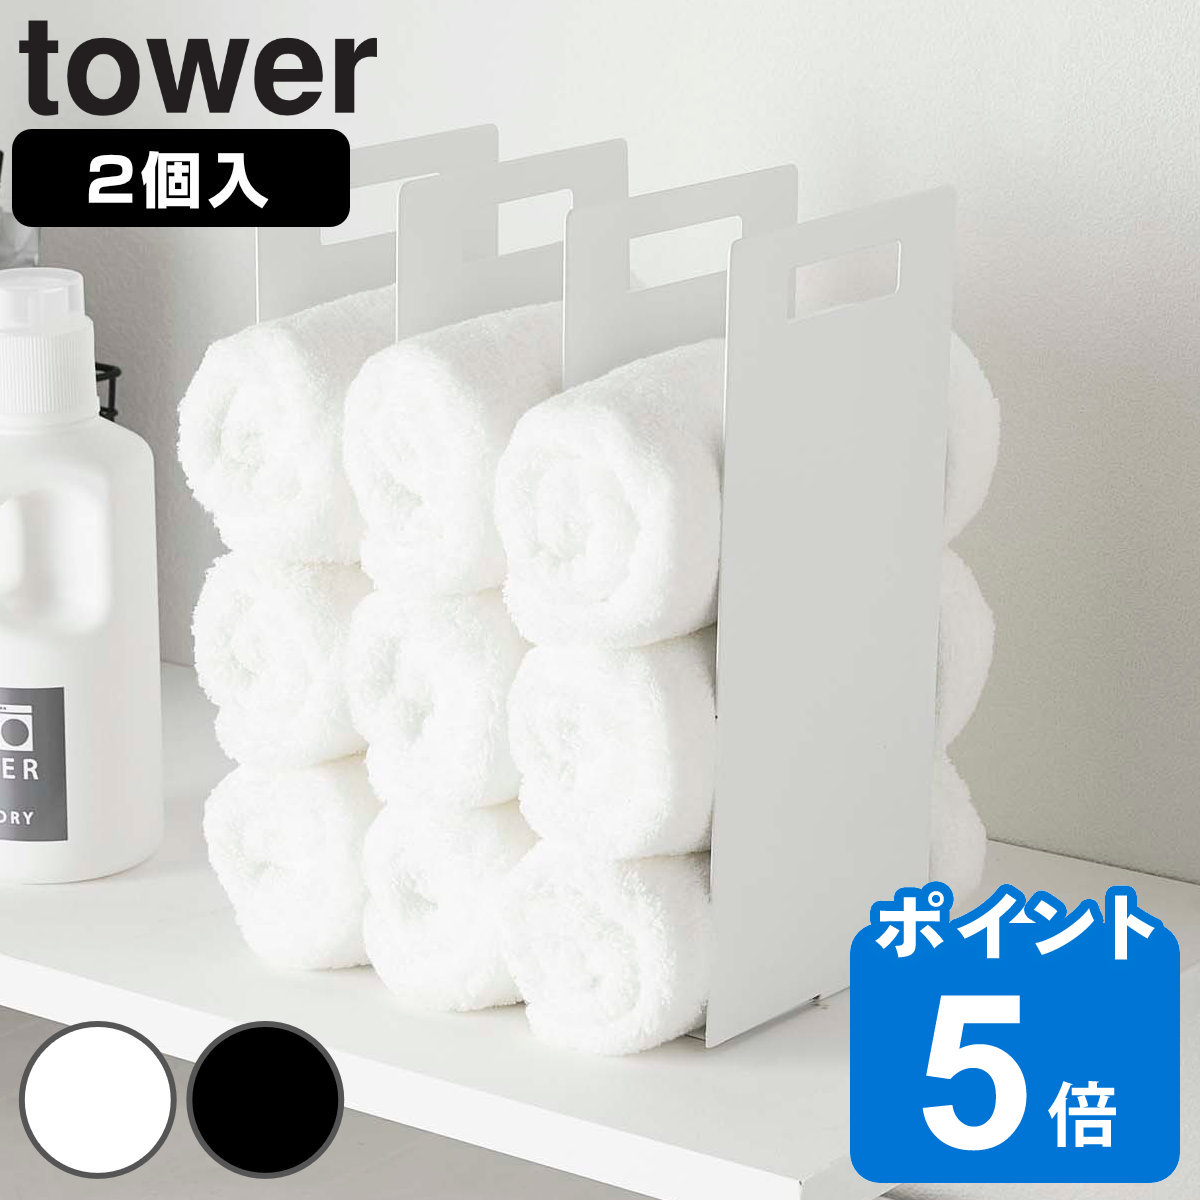 山崎実業 tower 連結タオル収納ラック タワー 2個組